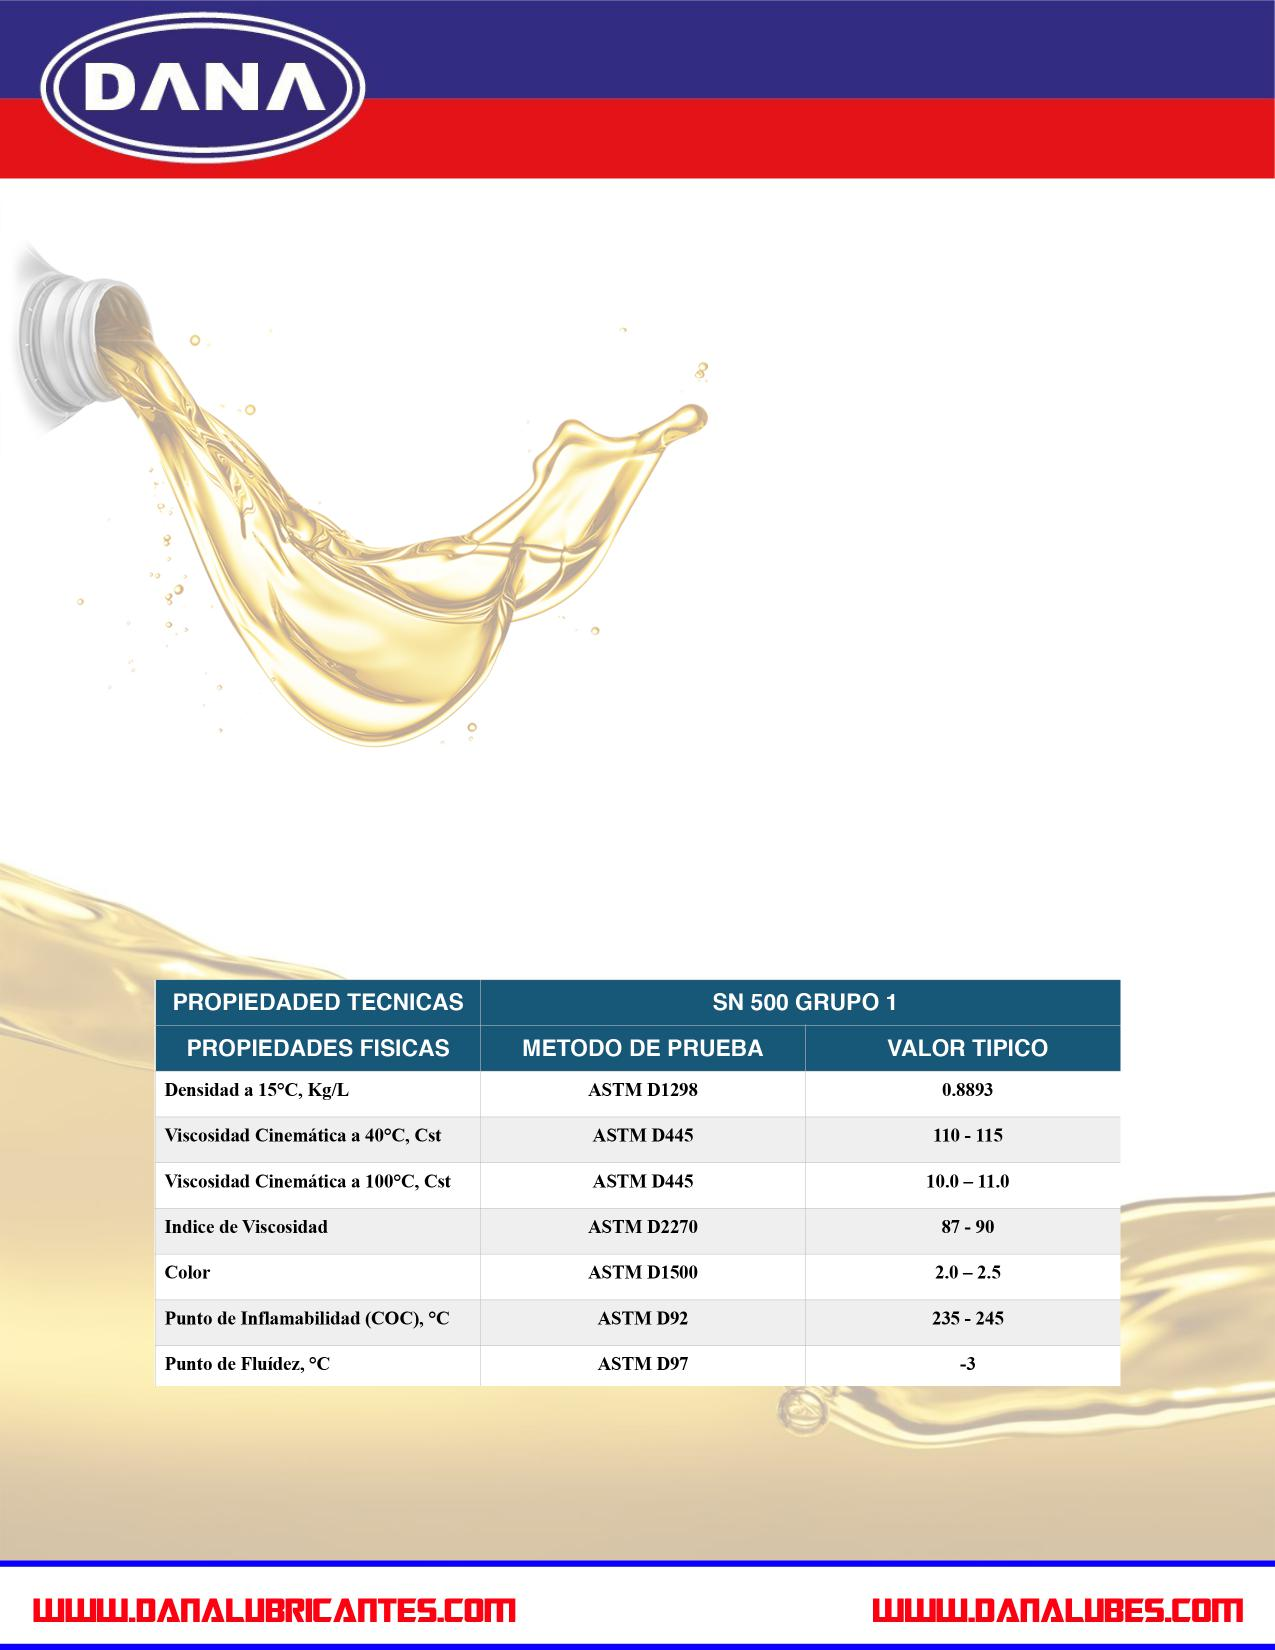 aceite base Lubricantes DANA se especializa en la adquisición y distribución de aceite base de todos los grados en la región MENA, los países del CCG y los países de la ASEAN.